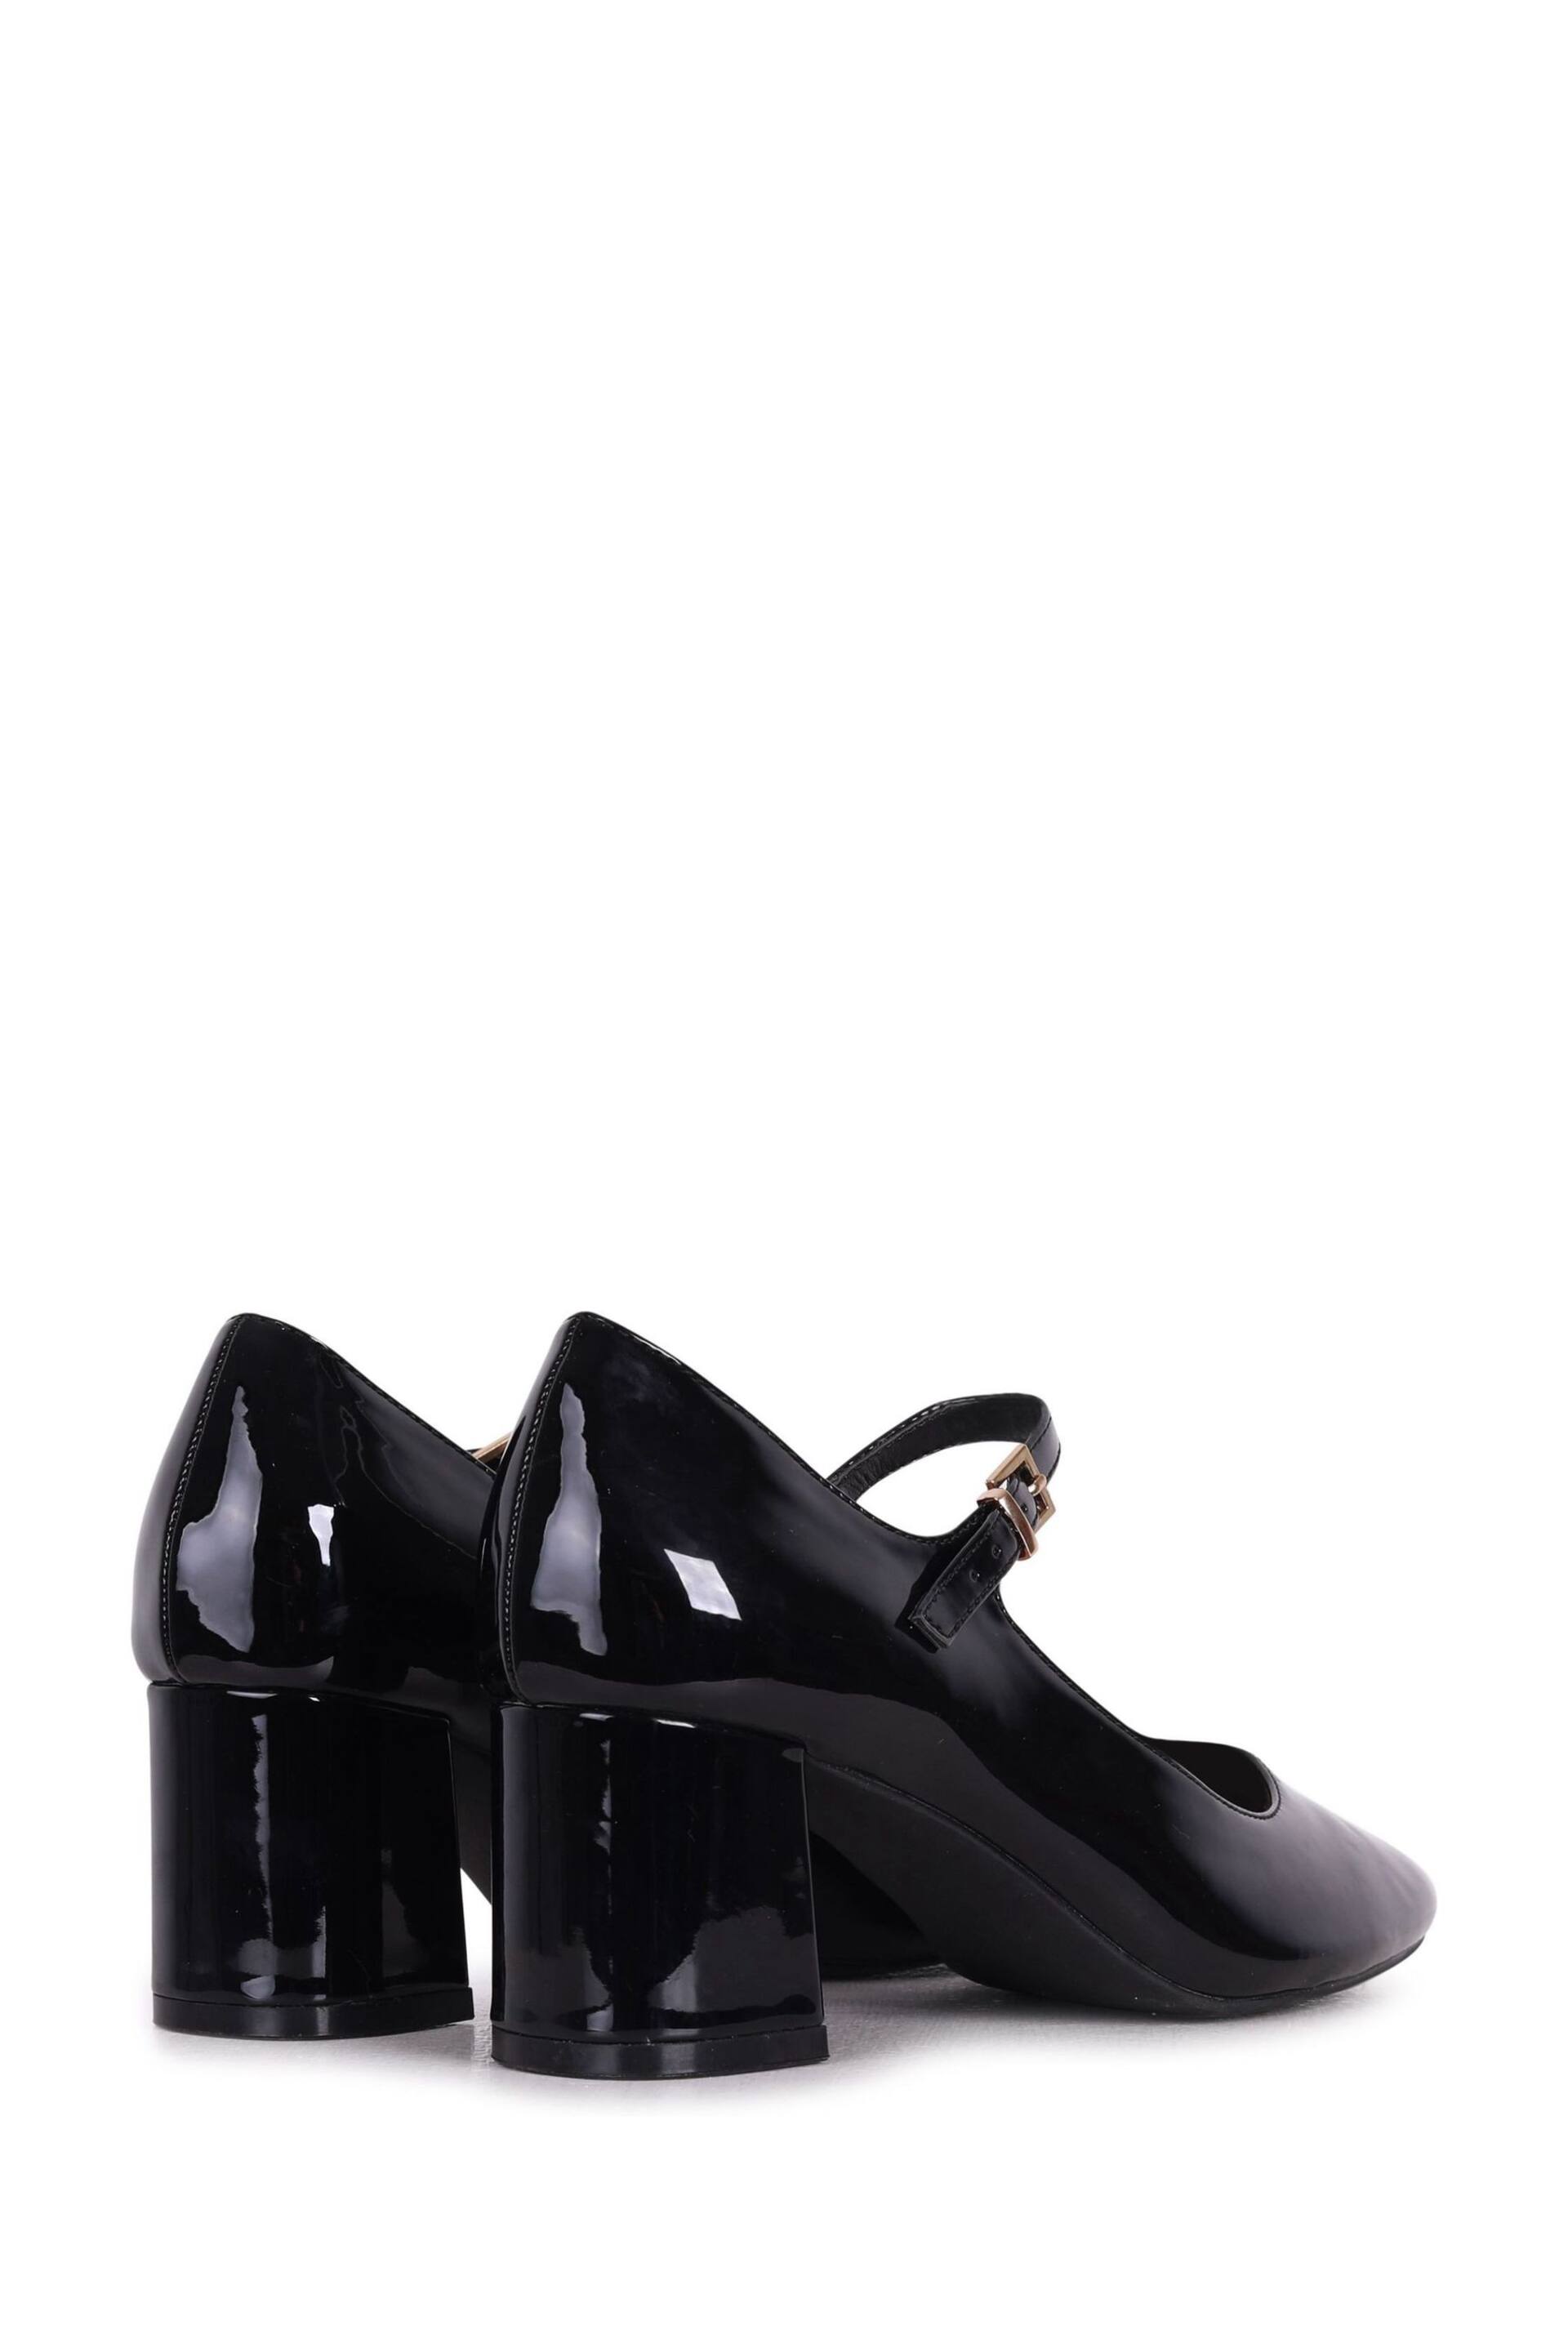 Linzi Black Patent Madeline Court Heel with Block Heels - Image 4 of 4